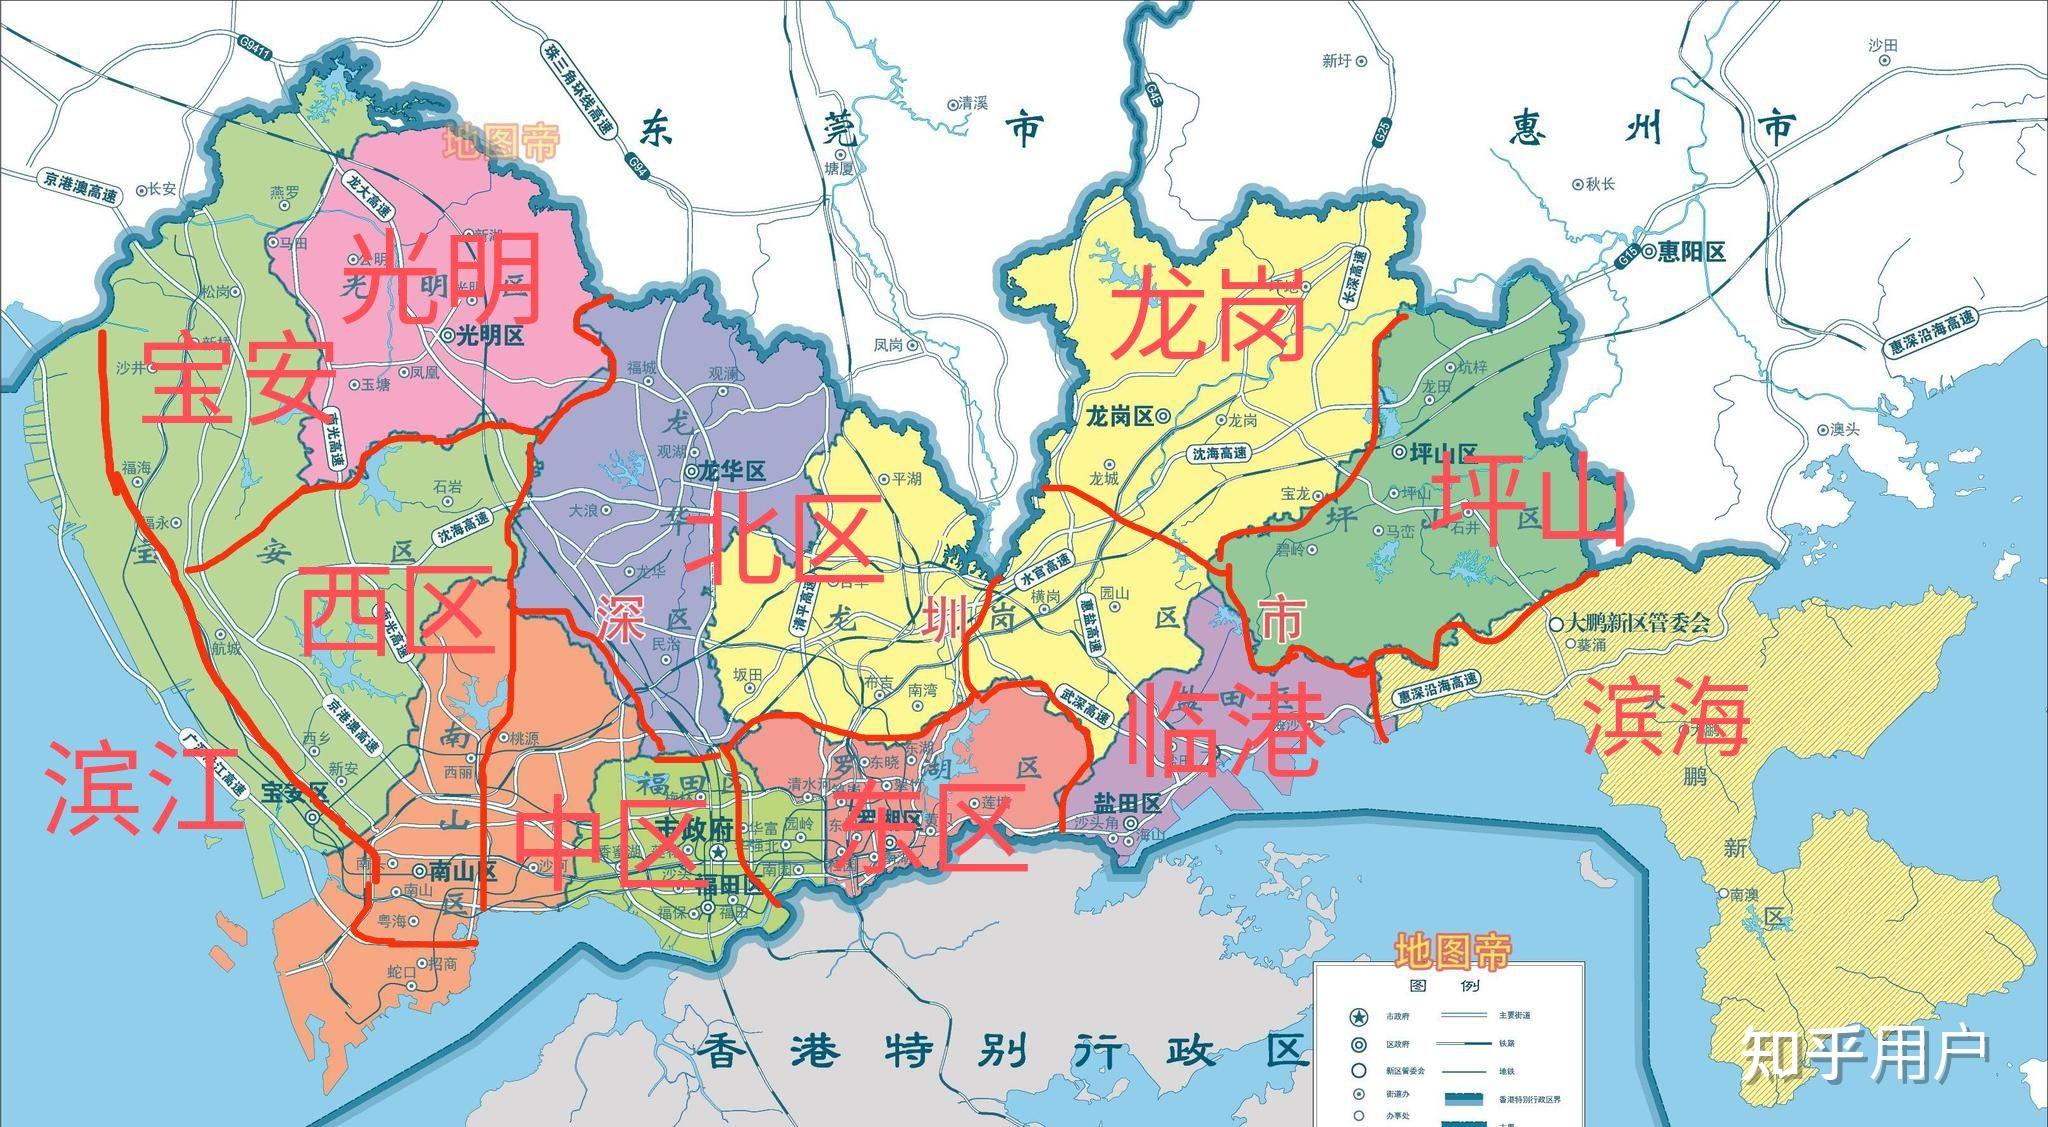 如何看待《深圳市区级行政区划优化调整方案》?